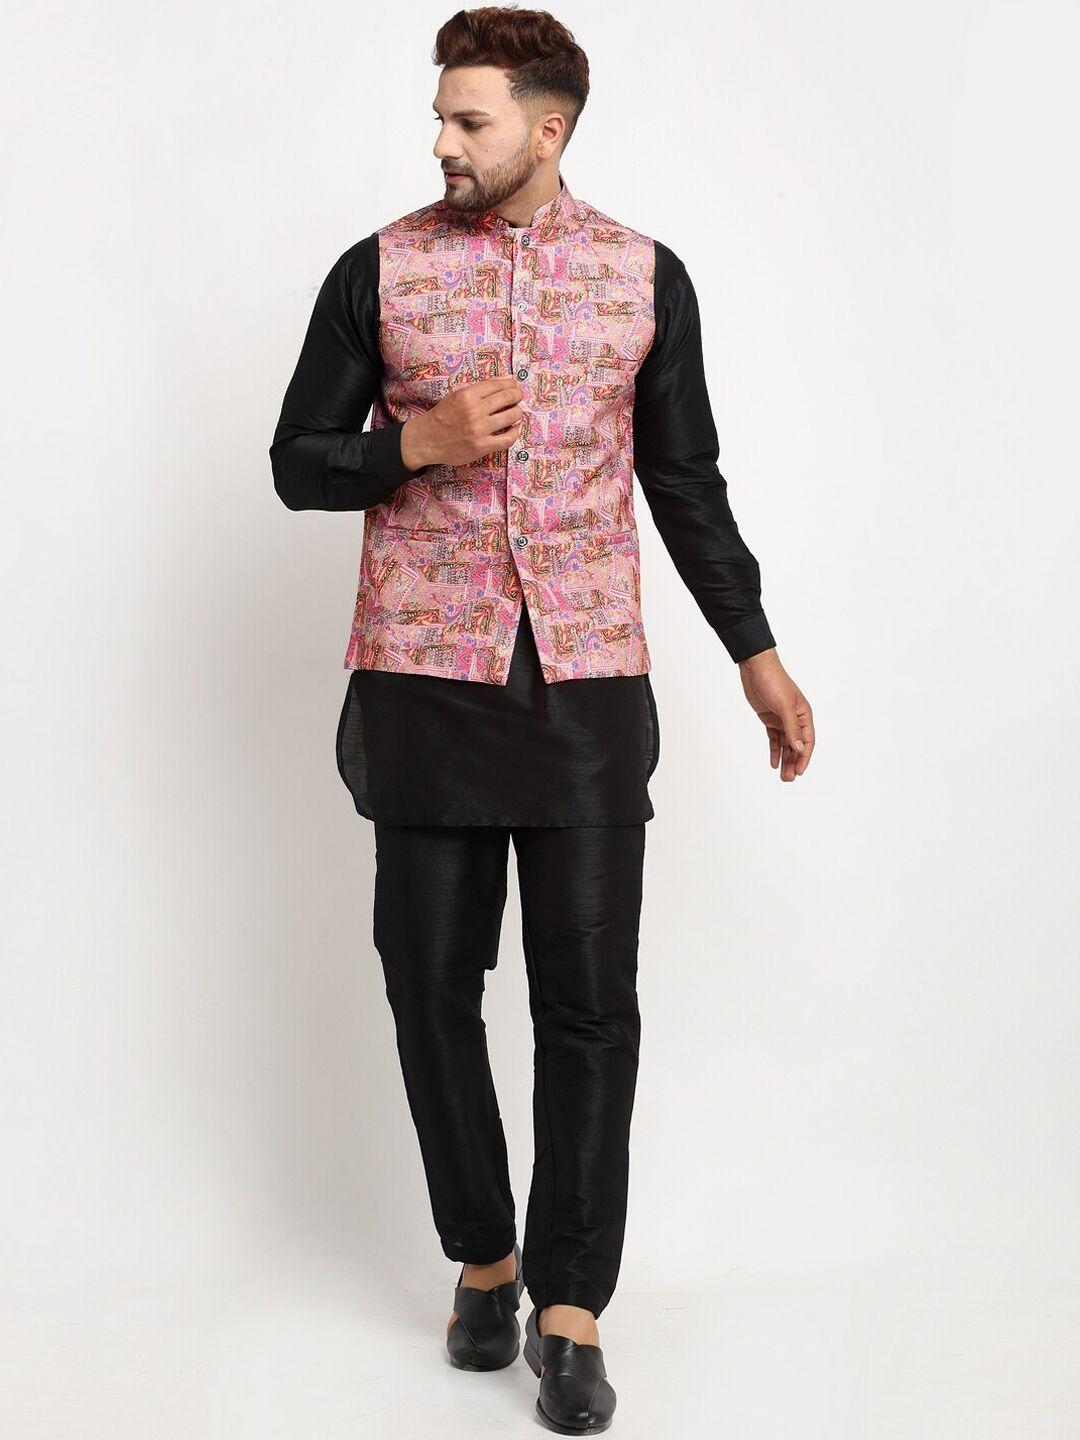 benstoke-men-black-kurta-set-pink-printed-nehru-jacket